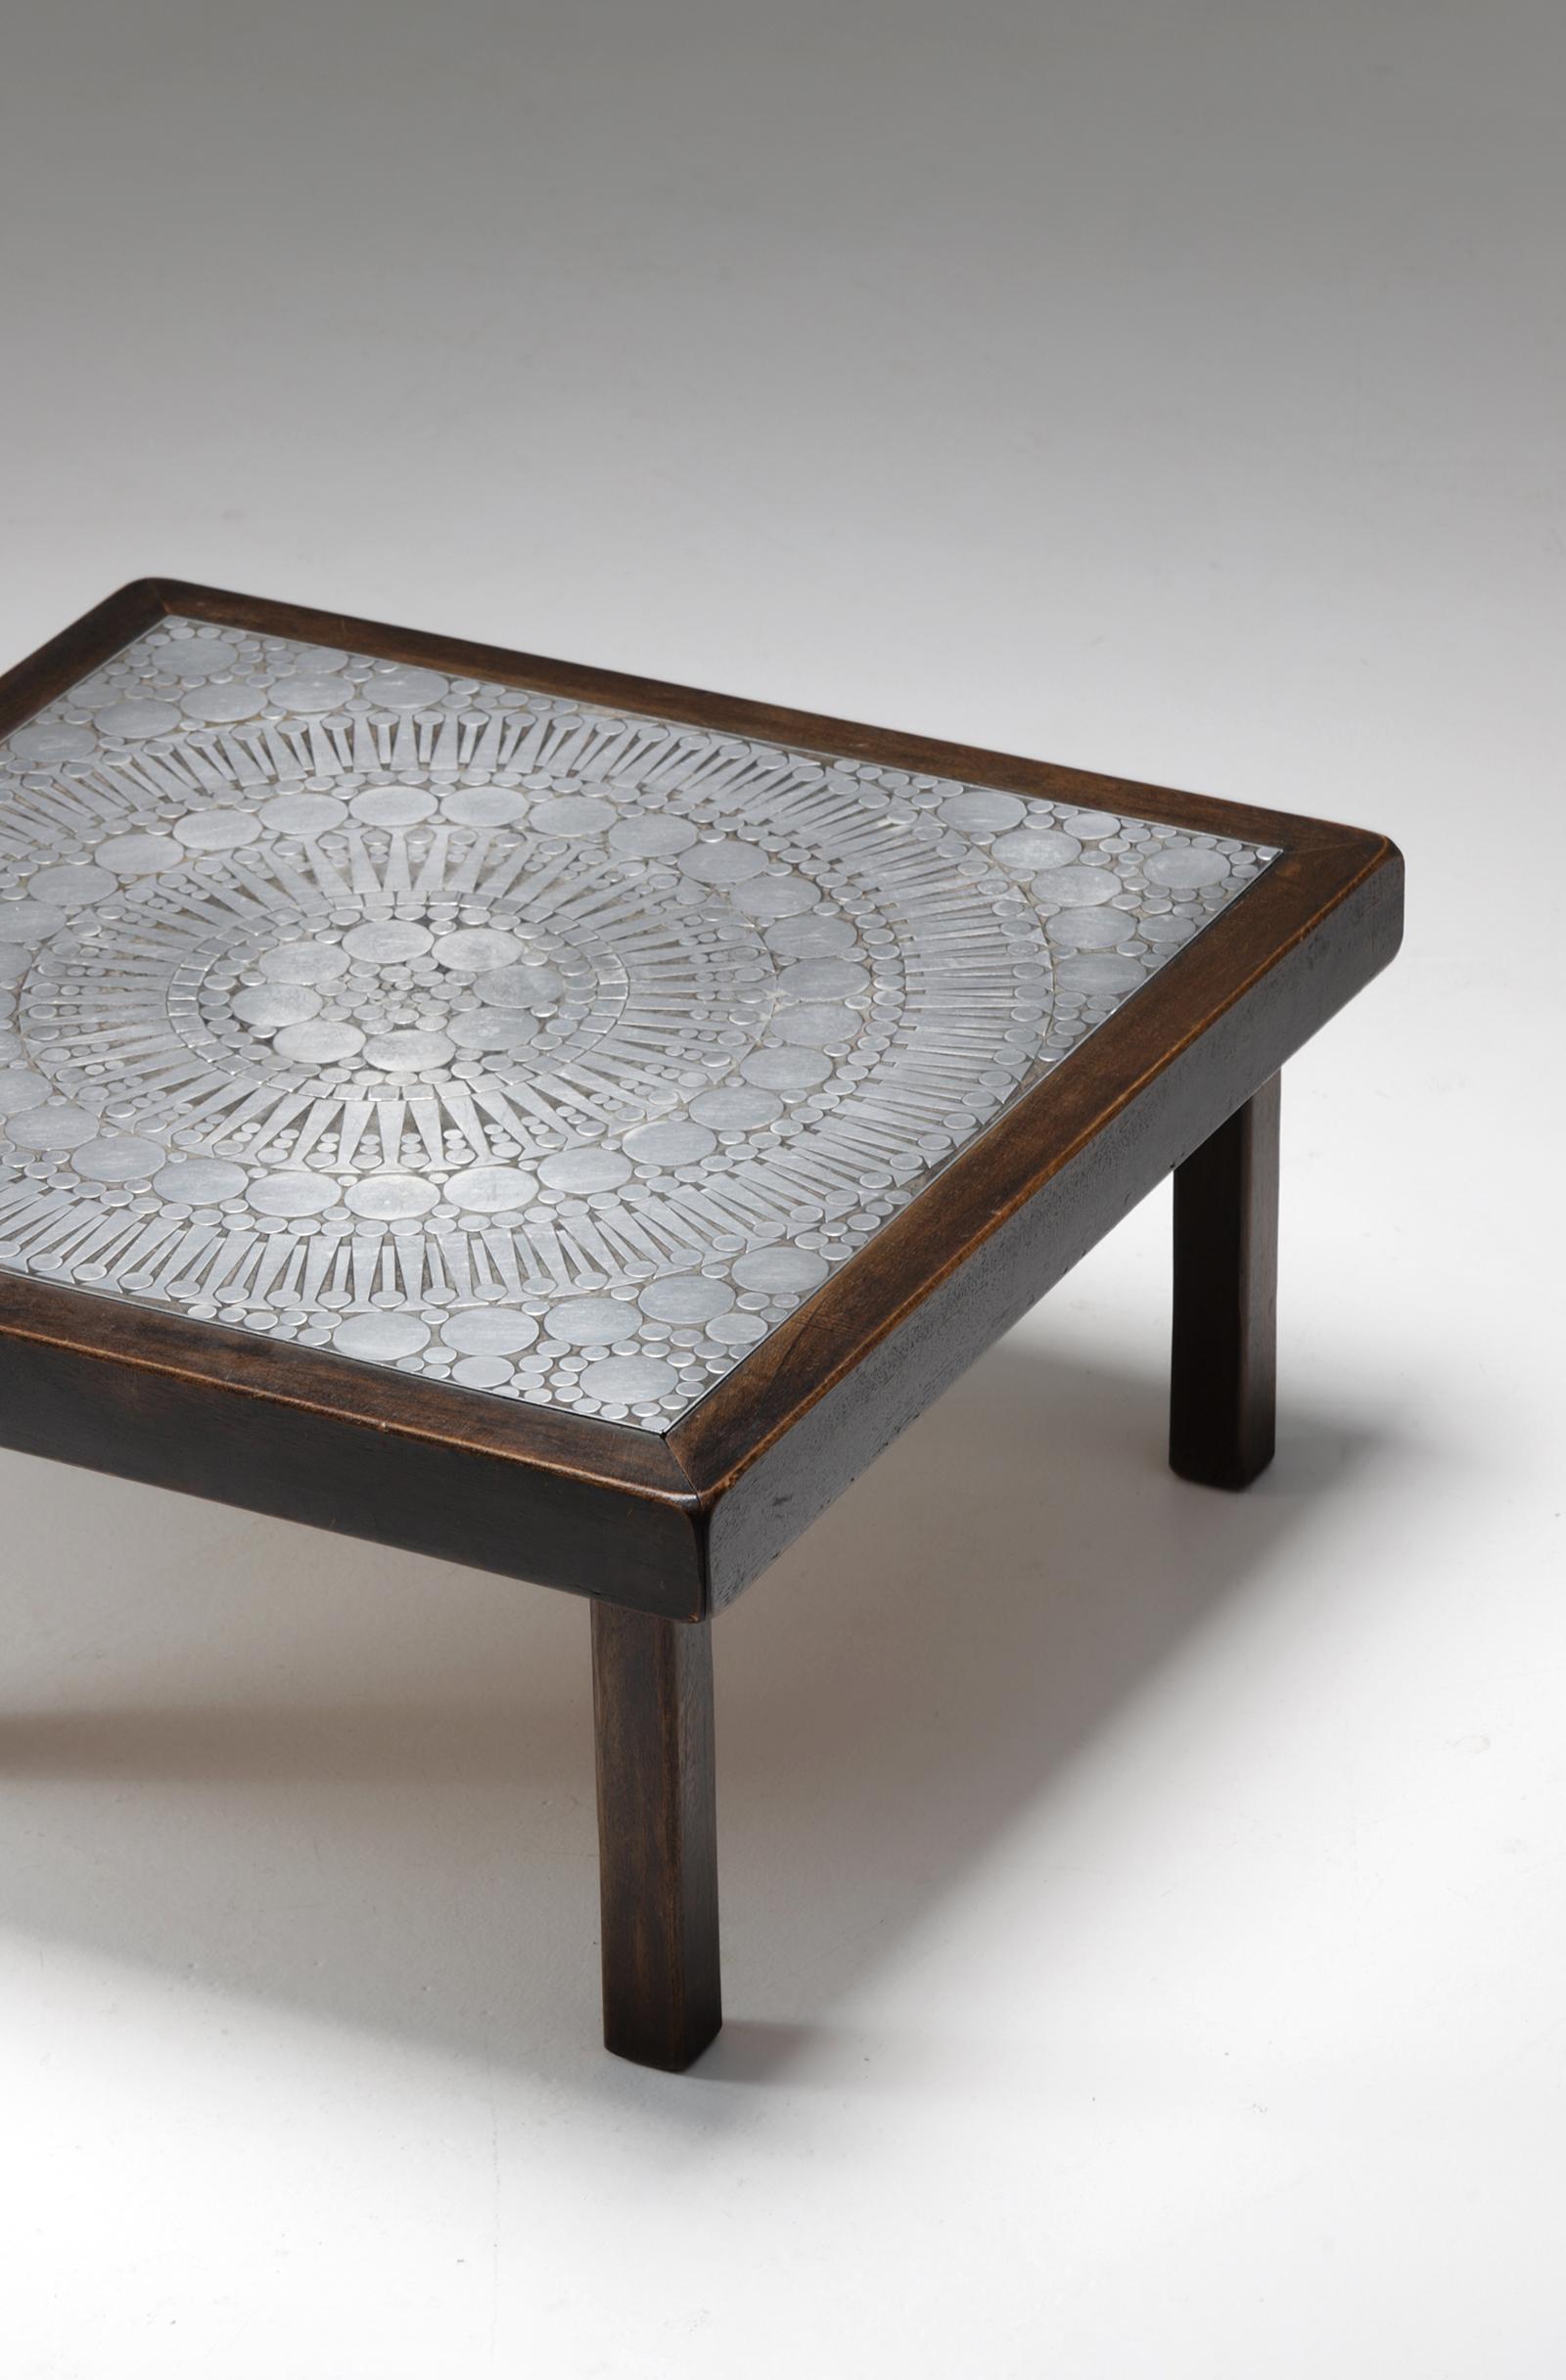 Metal Raf Verjans Coffee Table with Mosaic Pattern, 1970